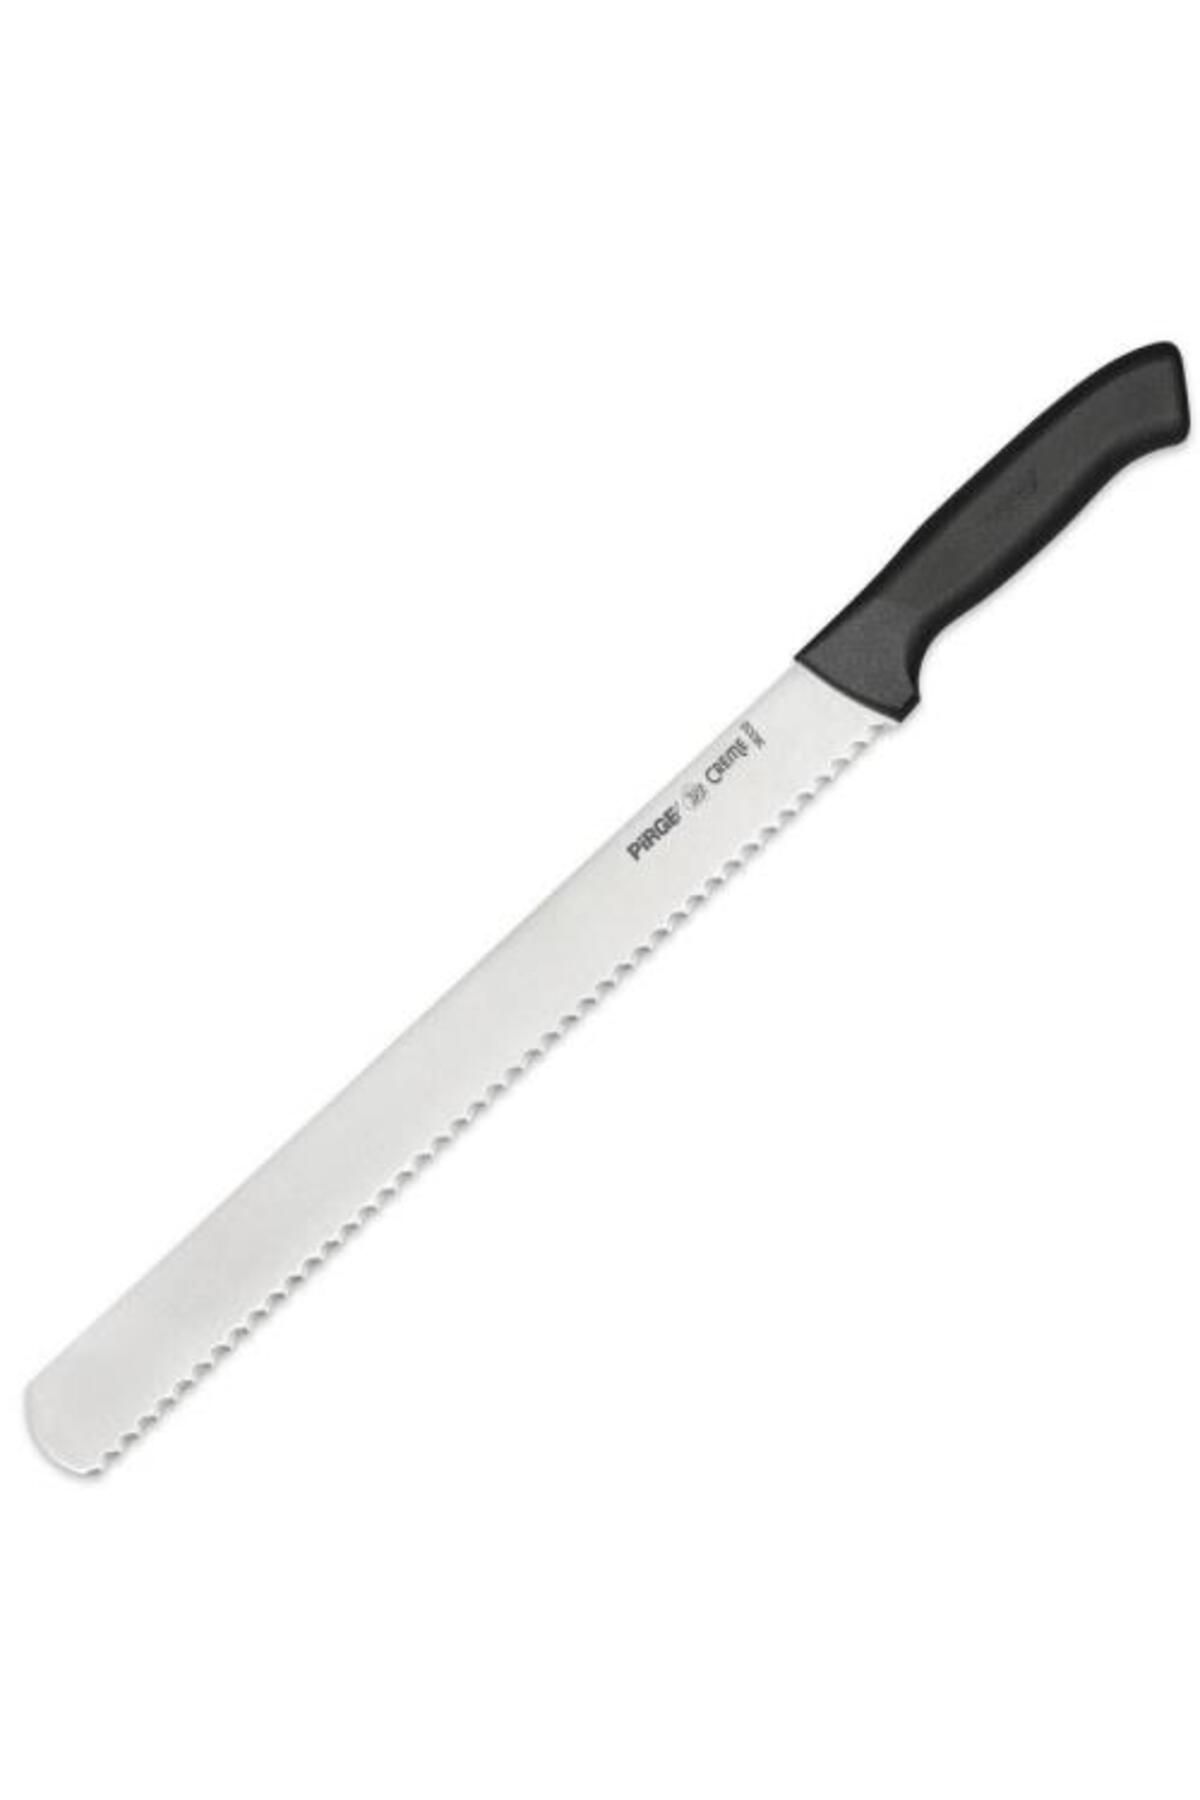 Ecco Jambon Bıçağı Dişli 35 cm